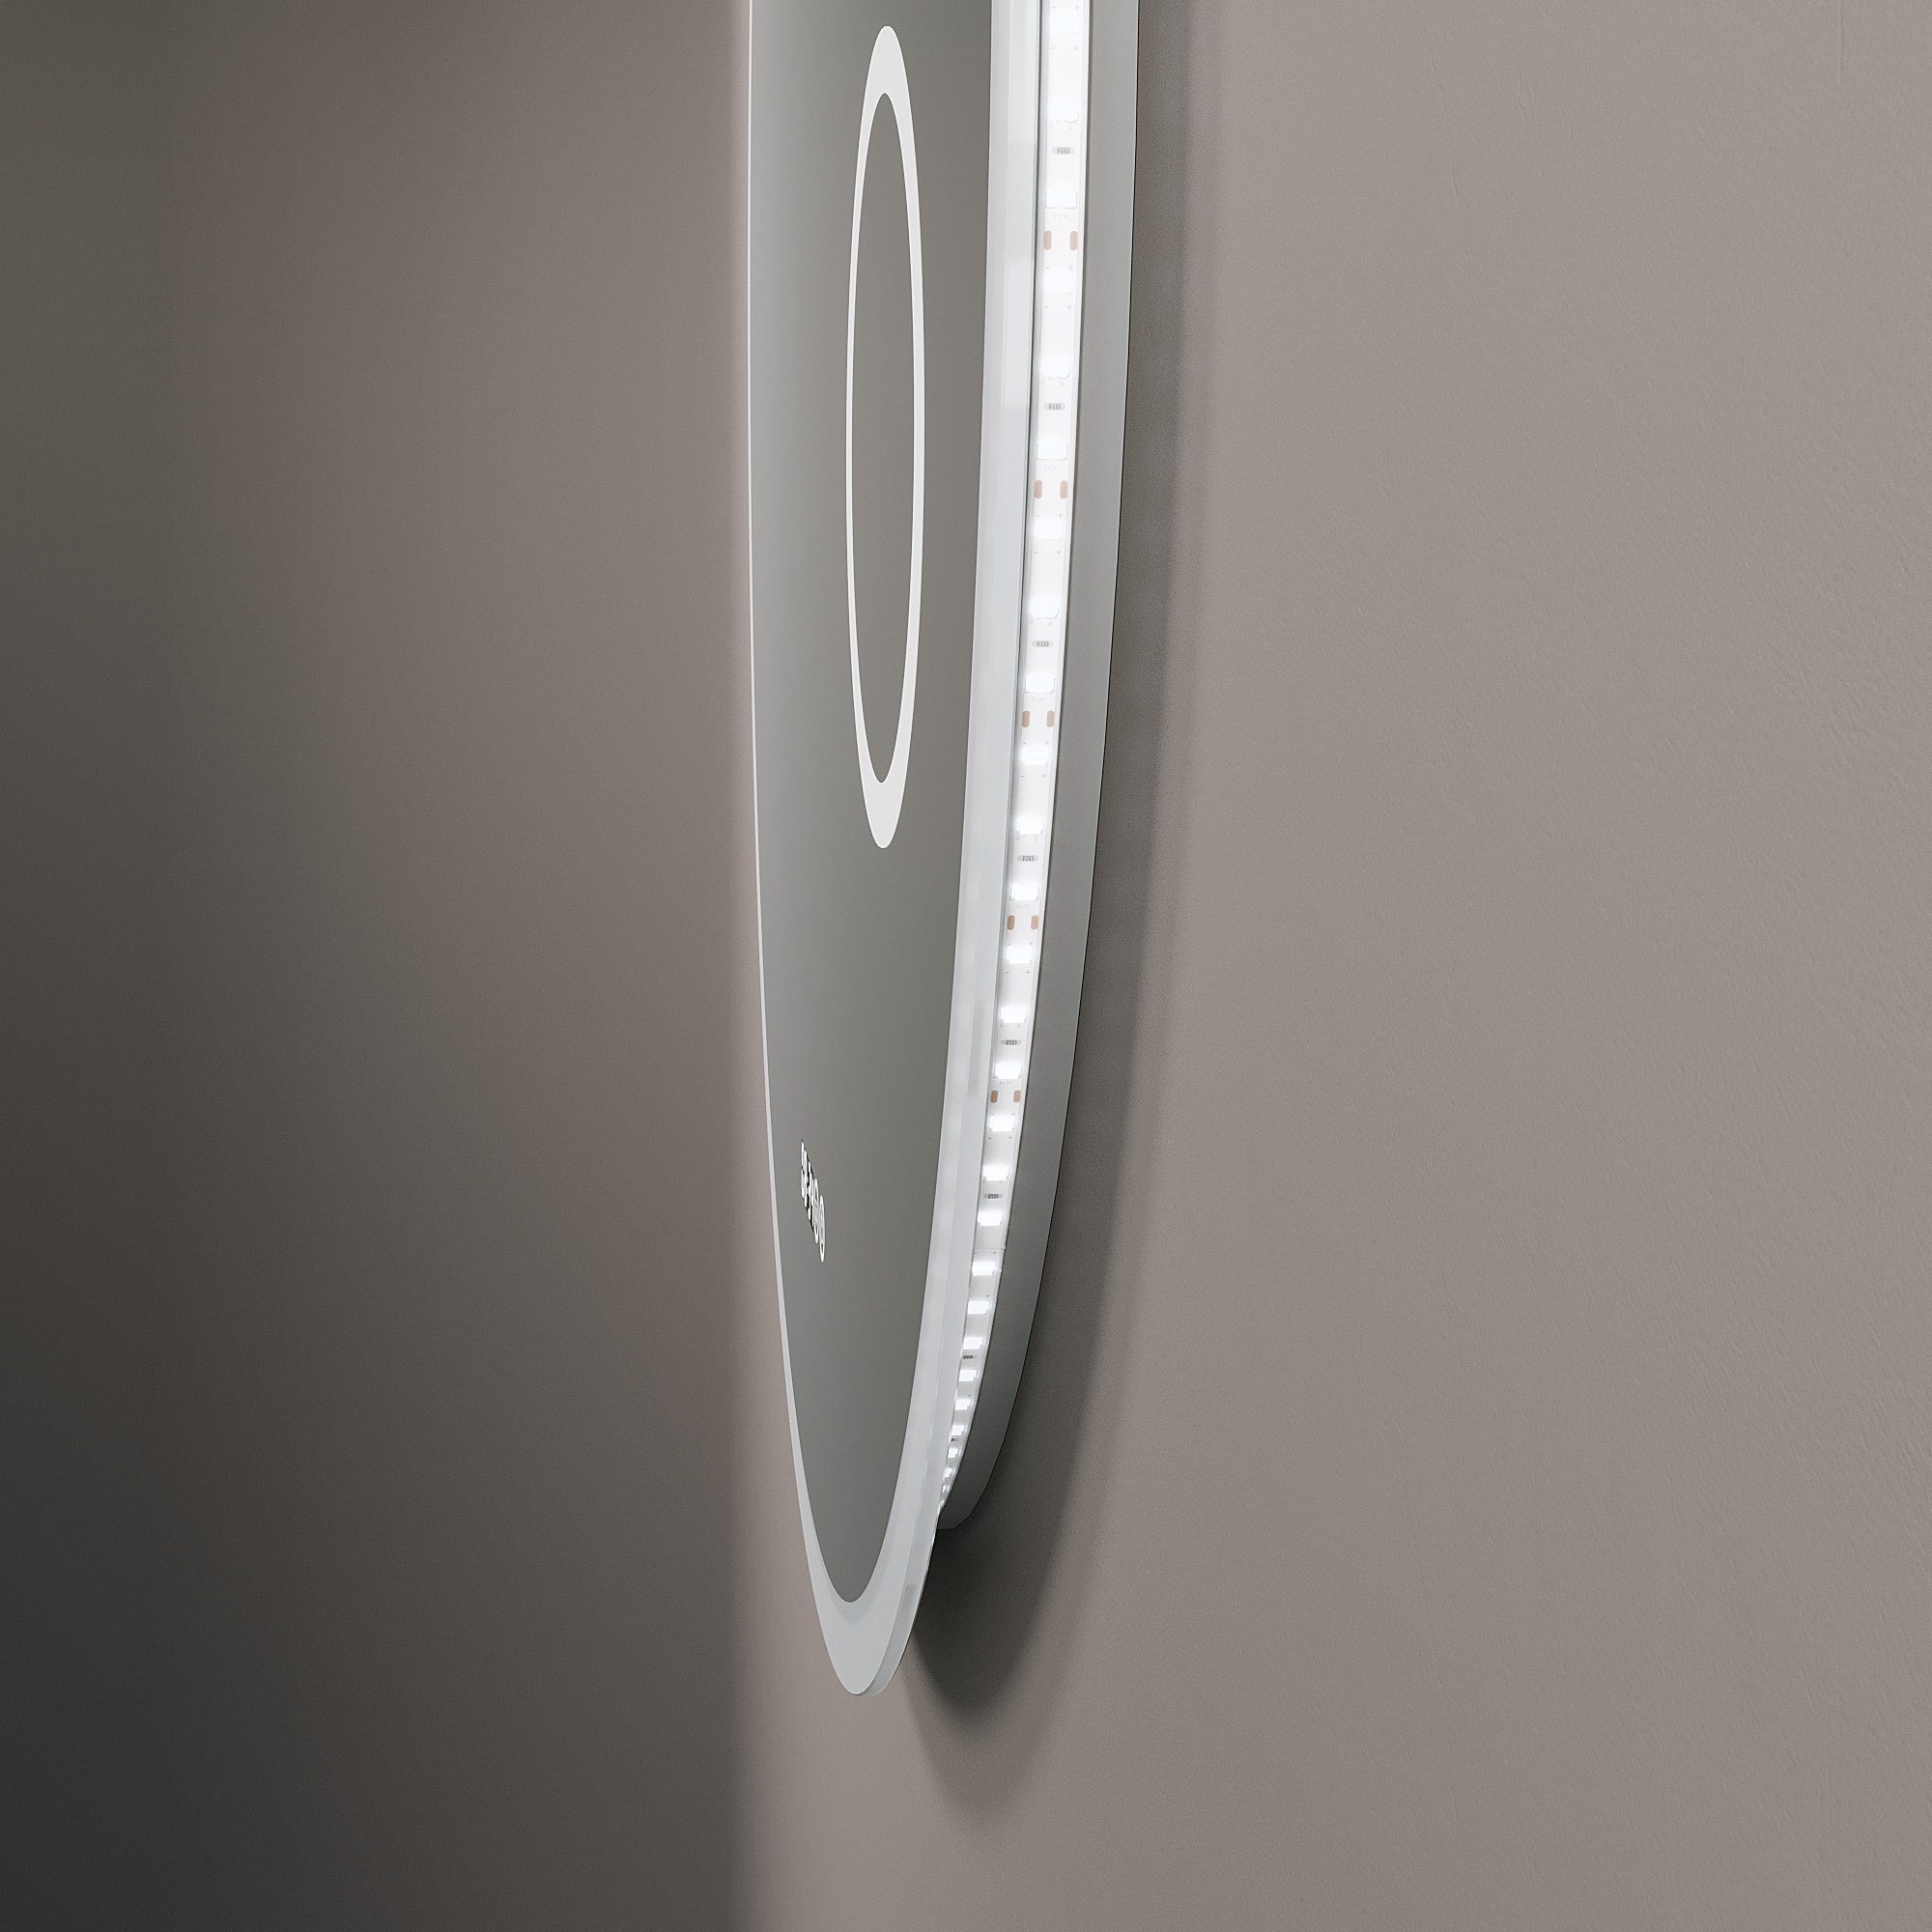 Lichtspiegel Bad Badspiegel Beleuchtung AQUABATOS Wandspiegel badezimmerspiegel, mit rund 3-fach-Vergrößerung,Kaltweiß,dimmbar,Digitaluhr,beschlagfrei